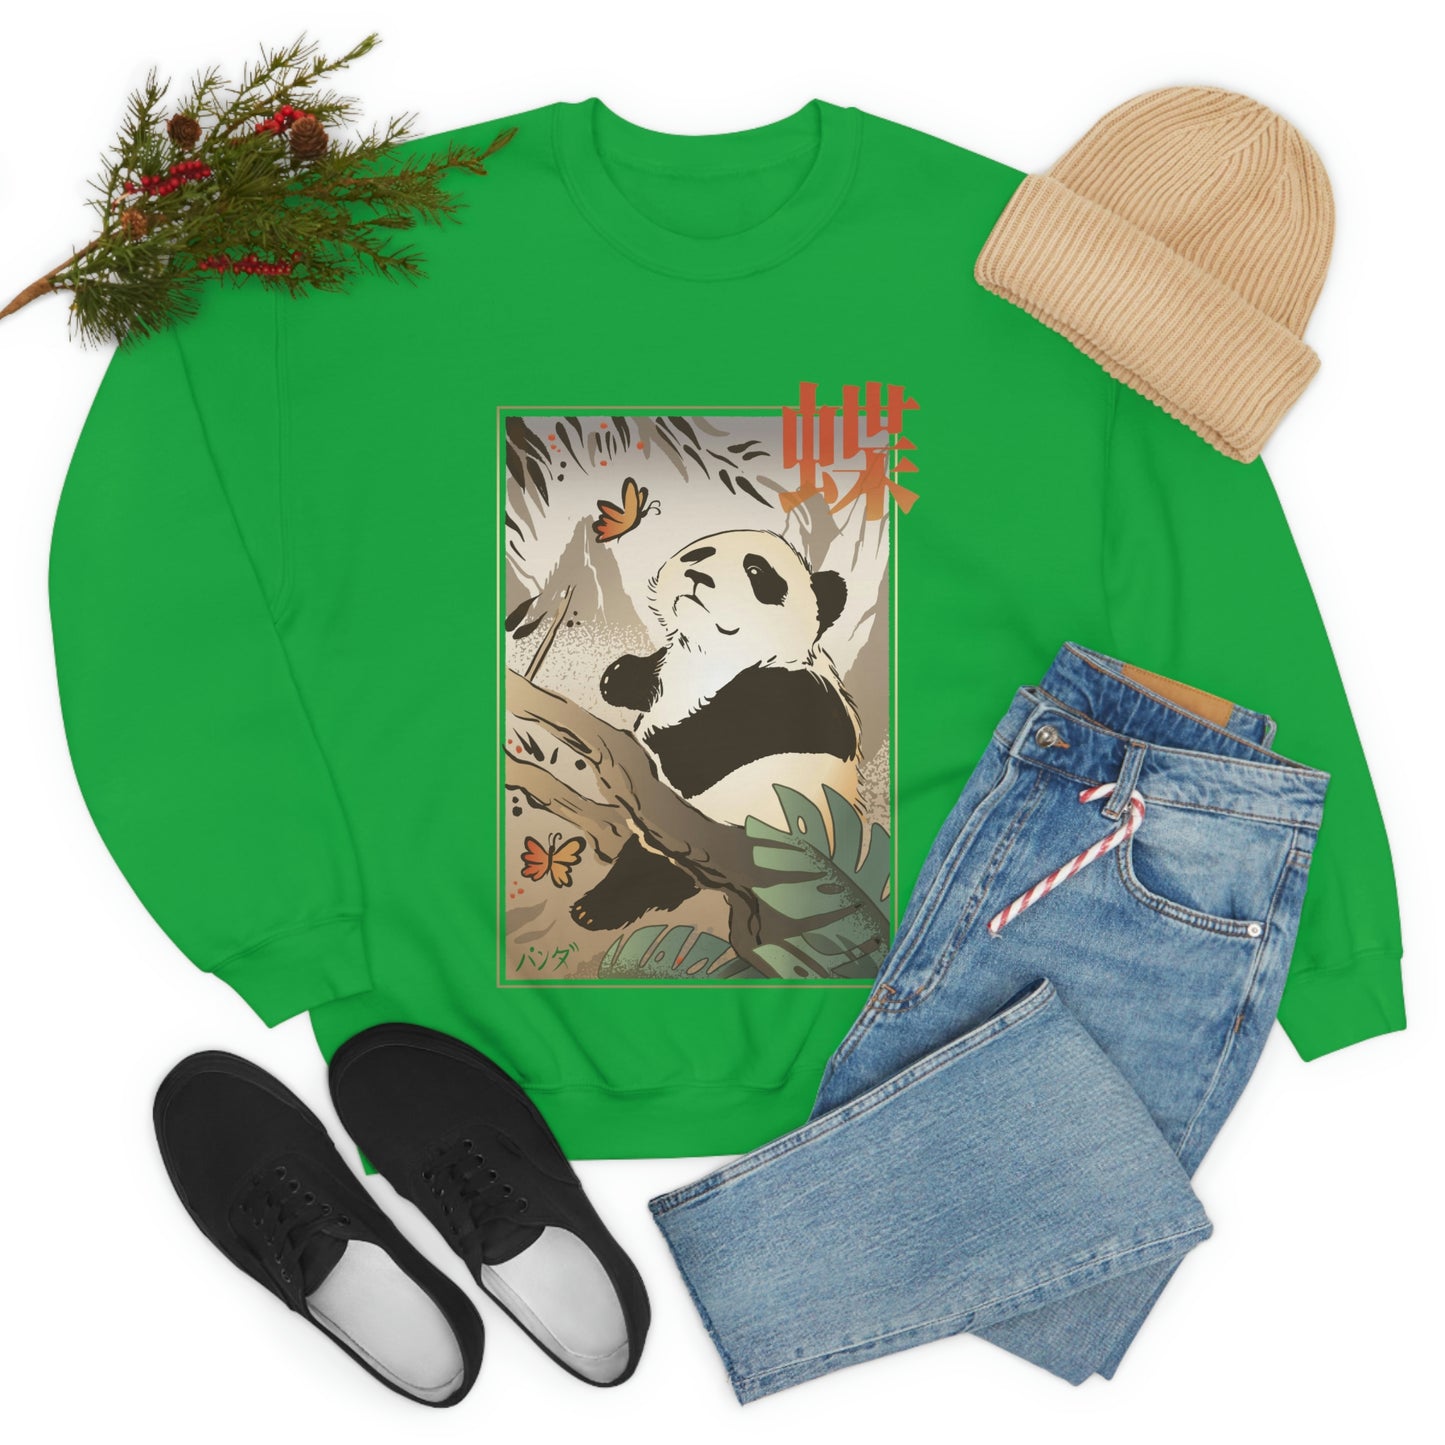 Indie Japanese Art, Japan Streeetwear Koala Sweatshirt